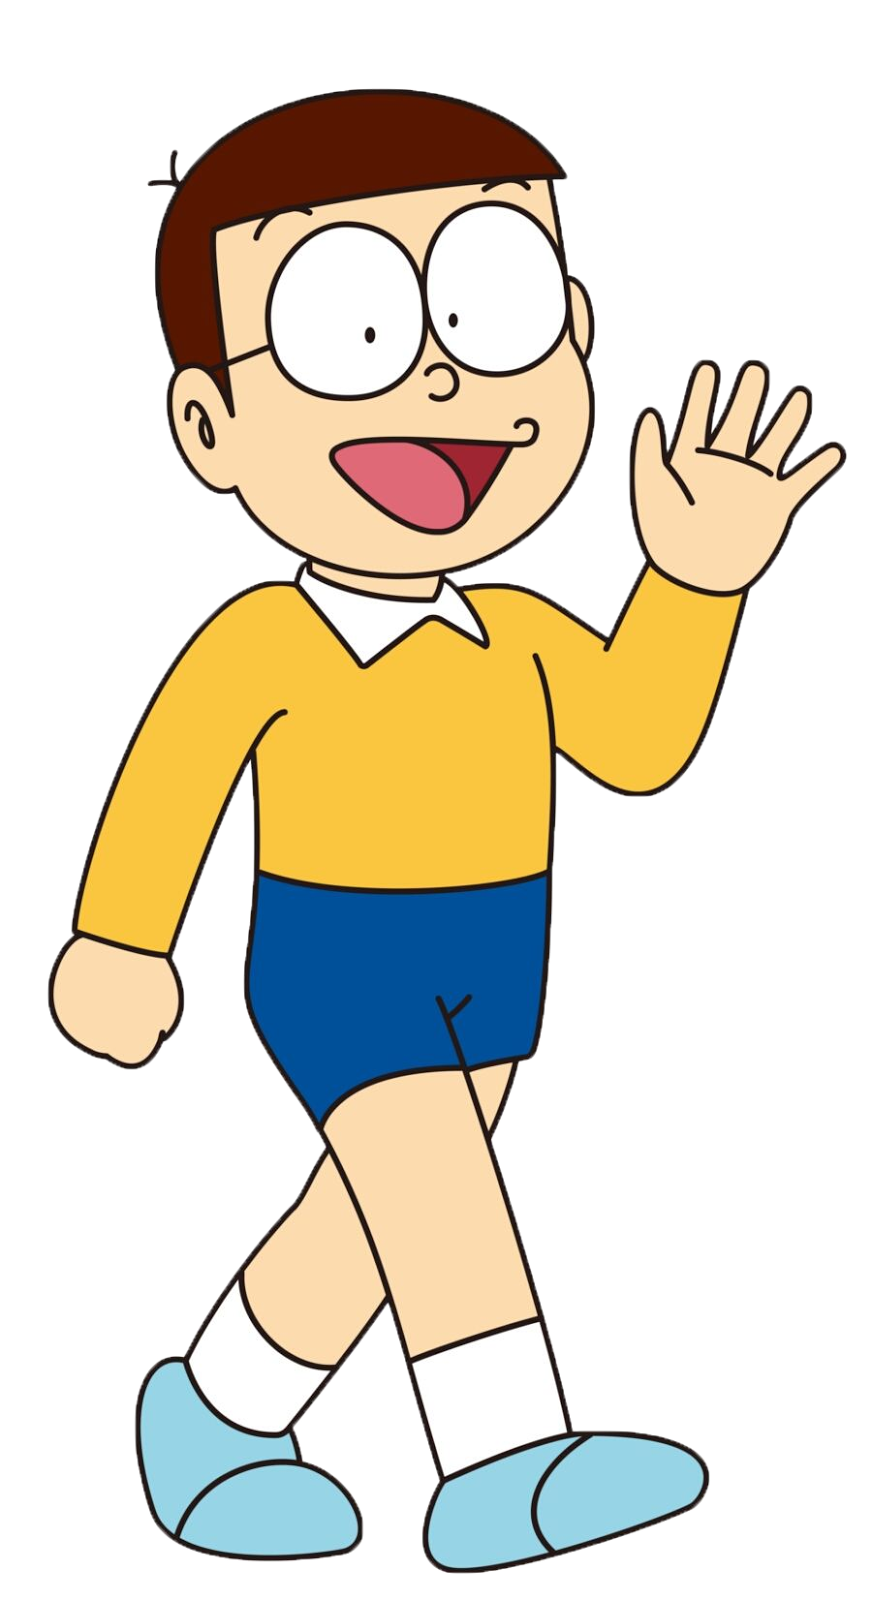 Doraemon cartoon character pictures - lasemsourcing